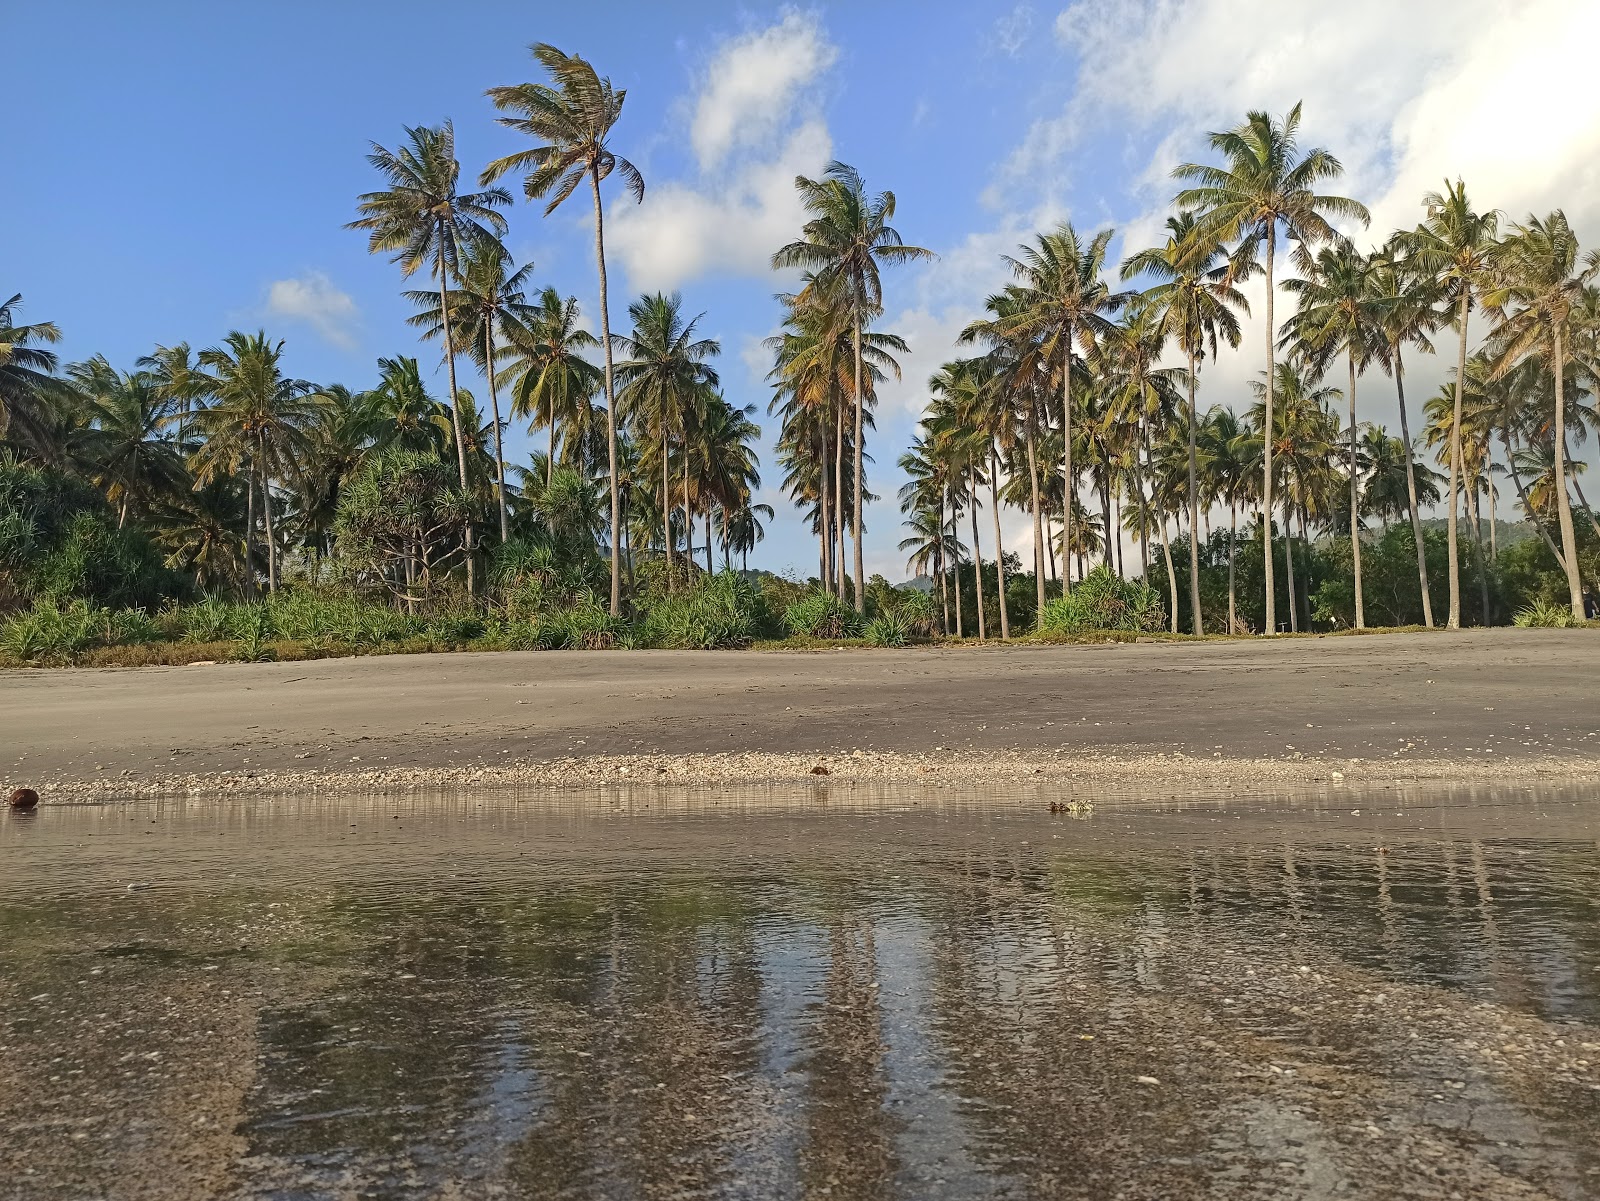 Zdjęcie Kerandangan Beach z przestronna plaża